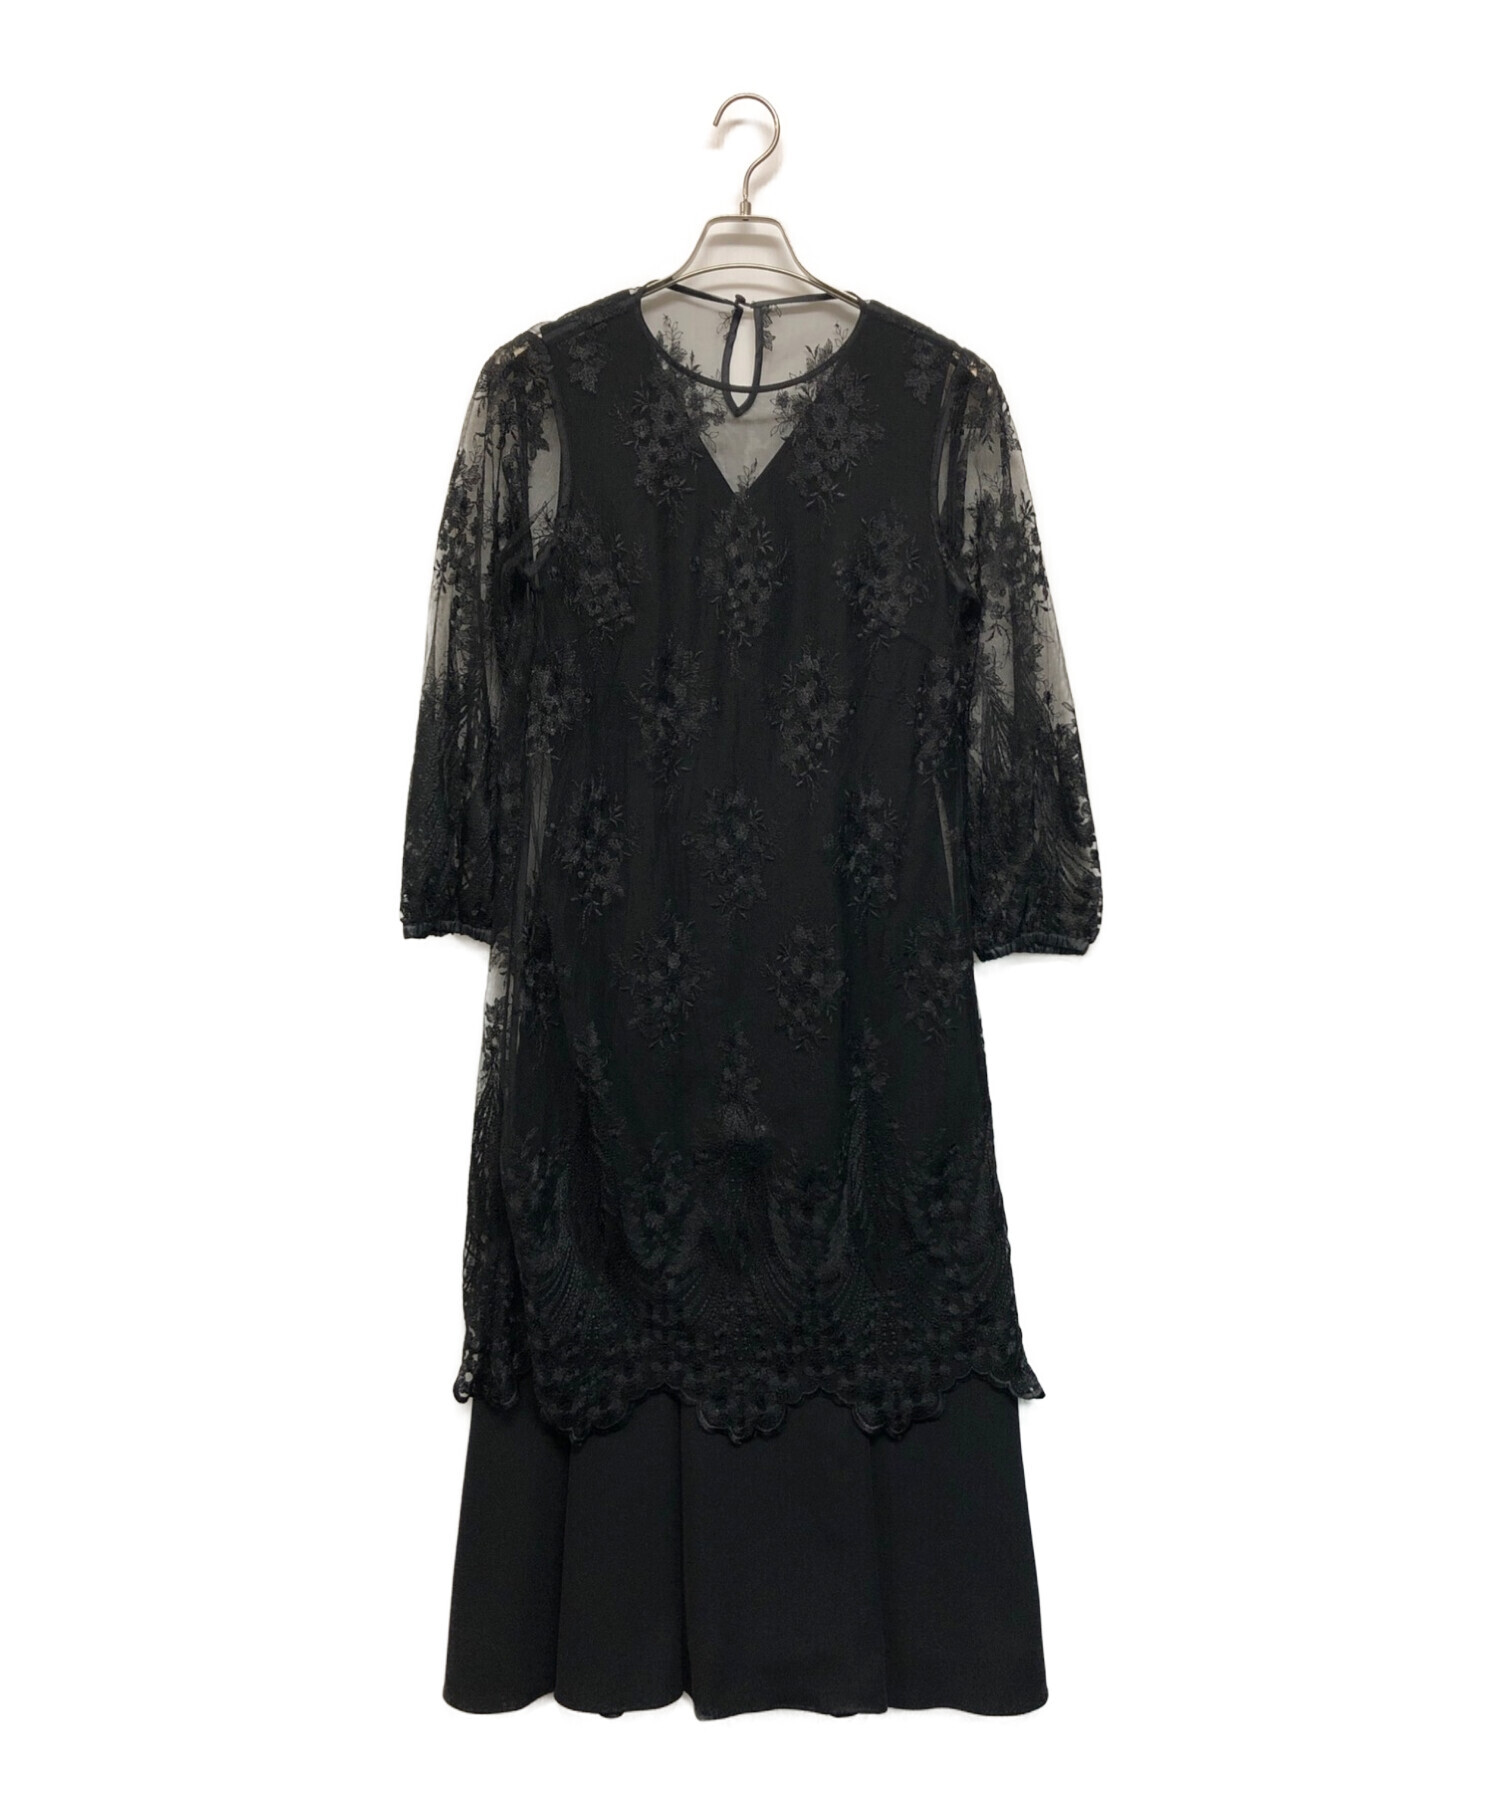 Ameri VINTAGE (アメリヴィンテージ) 3WAY LAYERED LACE DRESS ブラック サイズ:SIZE M